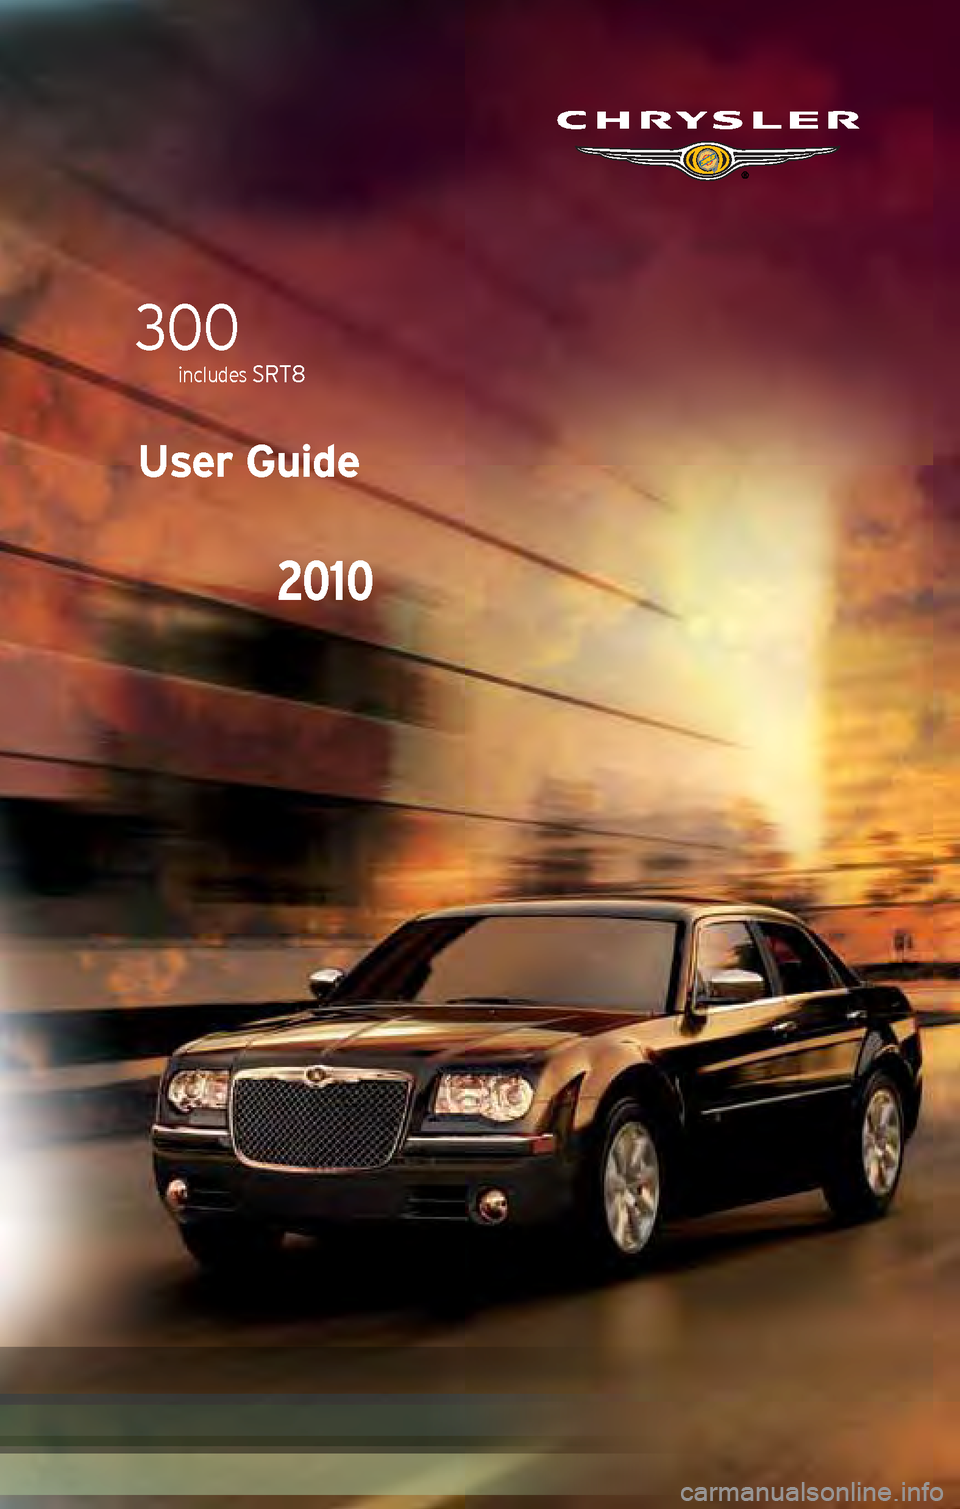 CHRYSLER 300 2010 1.G User Guide User Guide
2010
300
includes srt8    